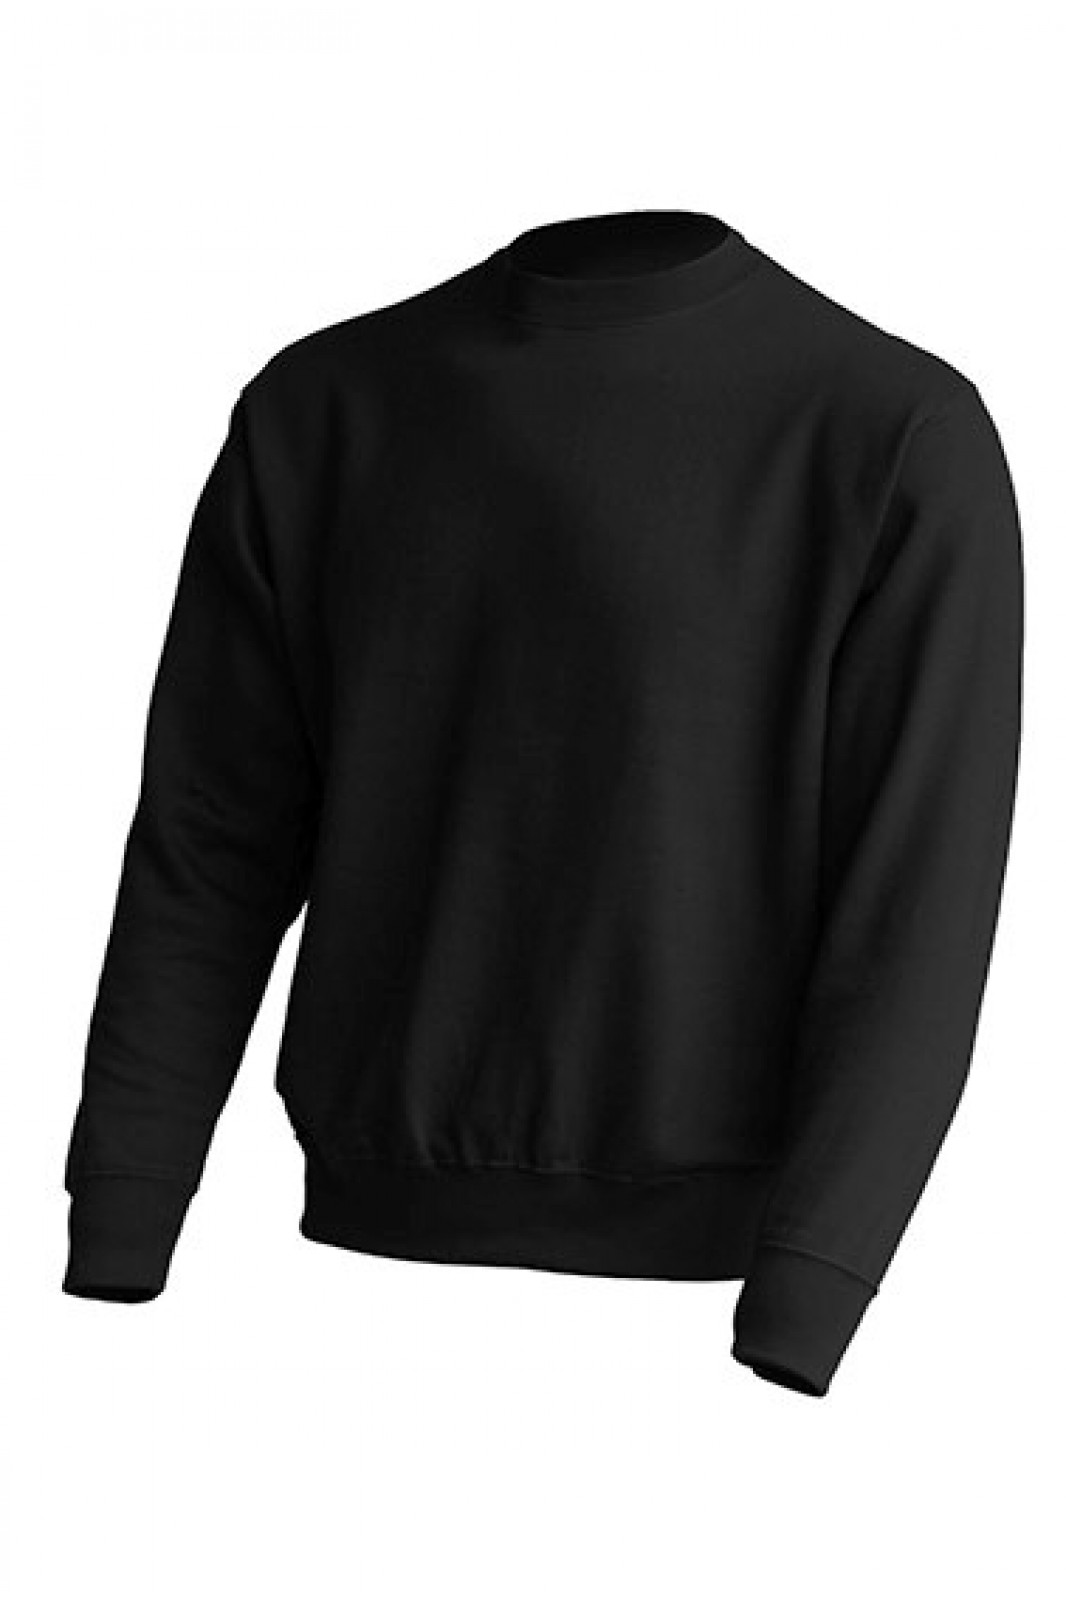 Einfarbiges Unisex-Sweatshirt JHK in 6 Farben